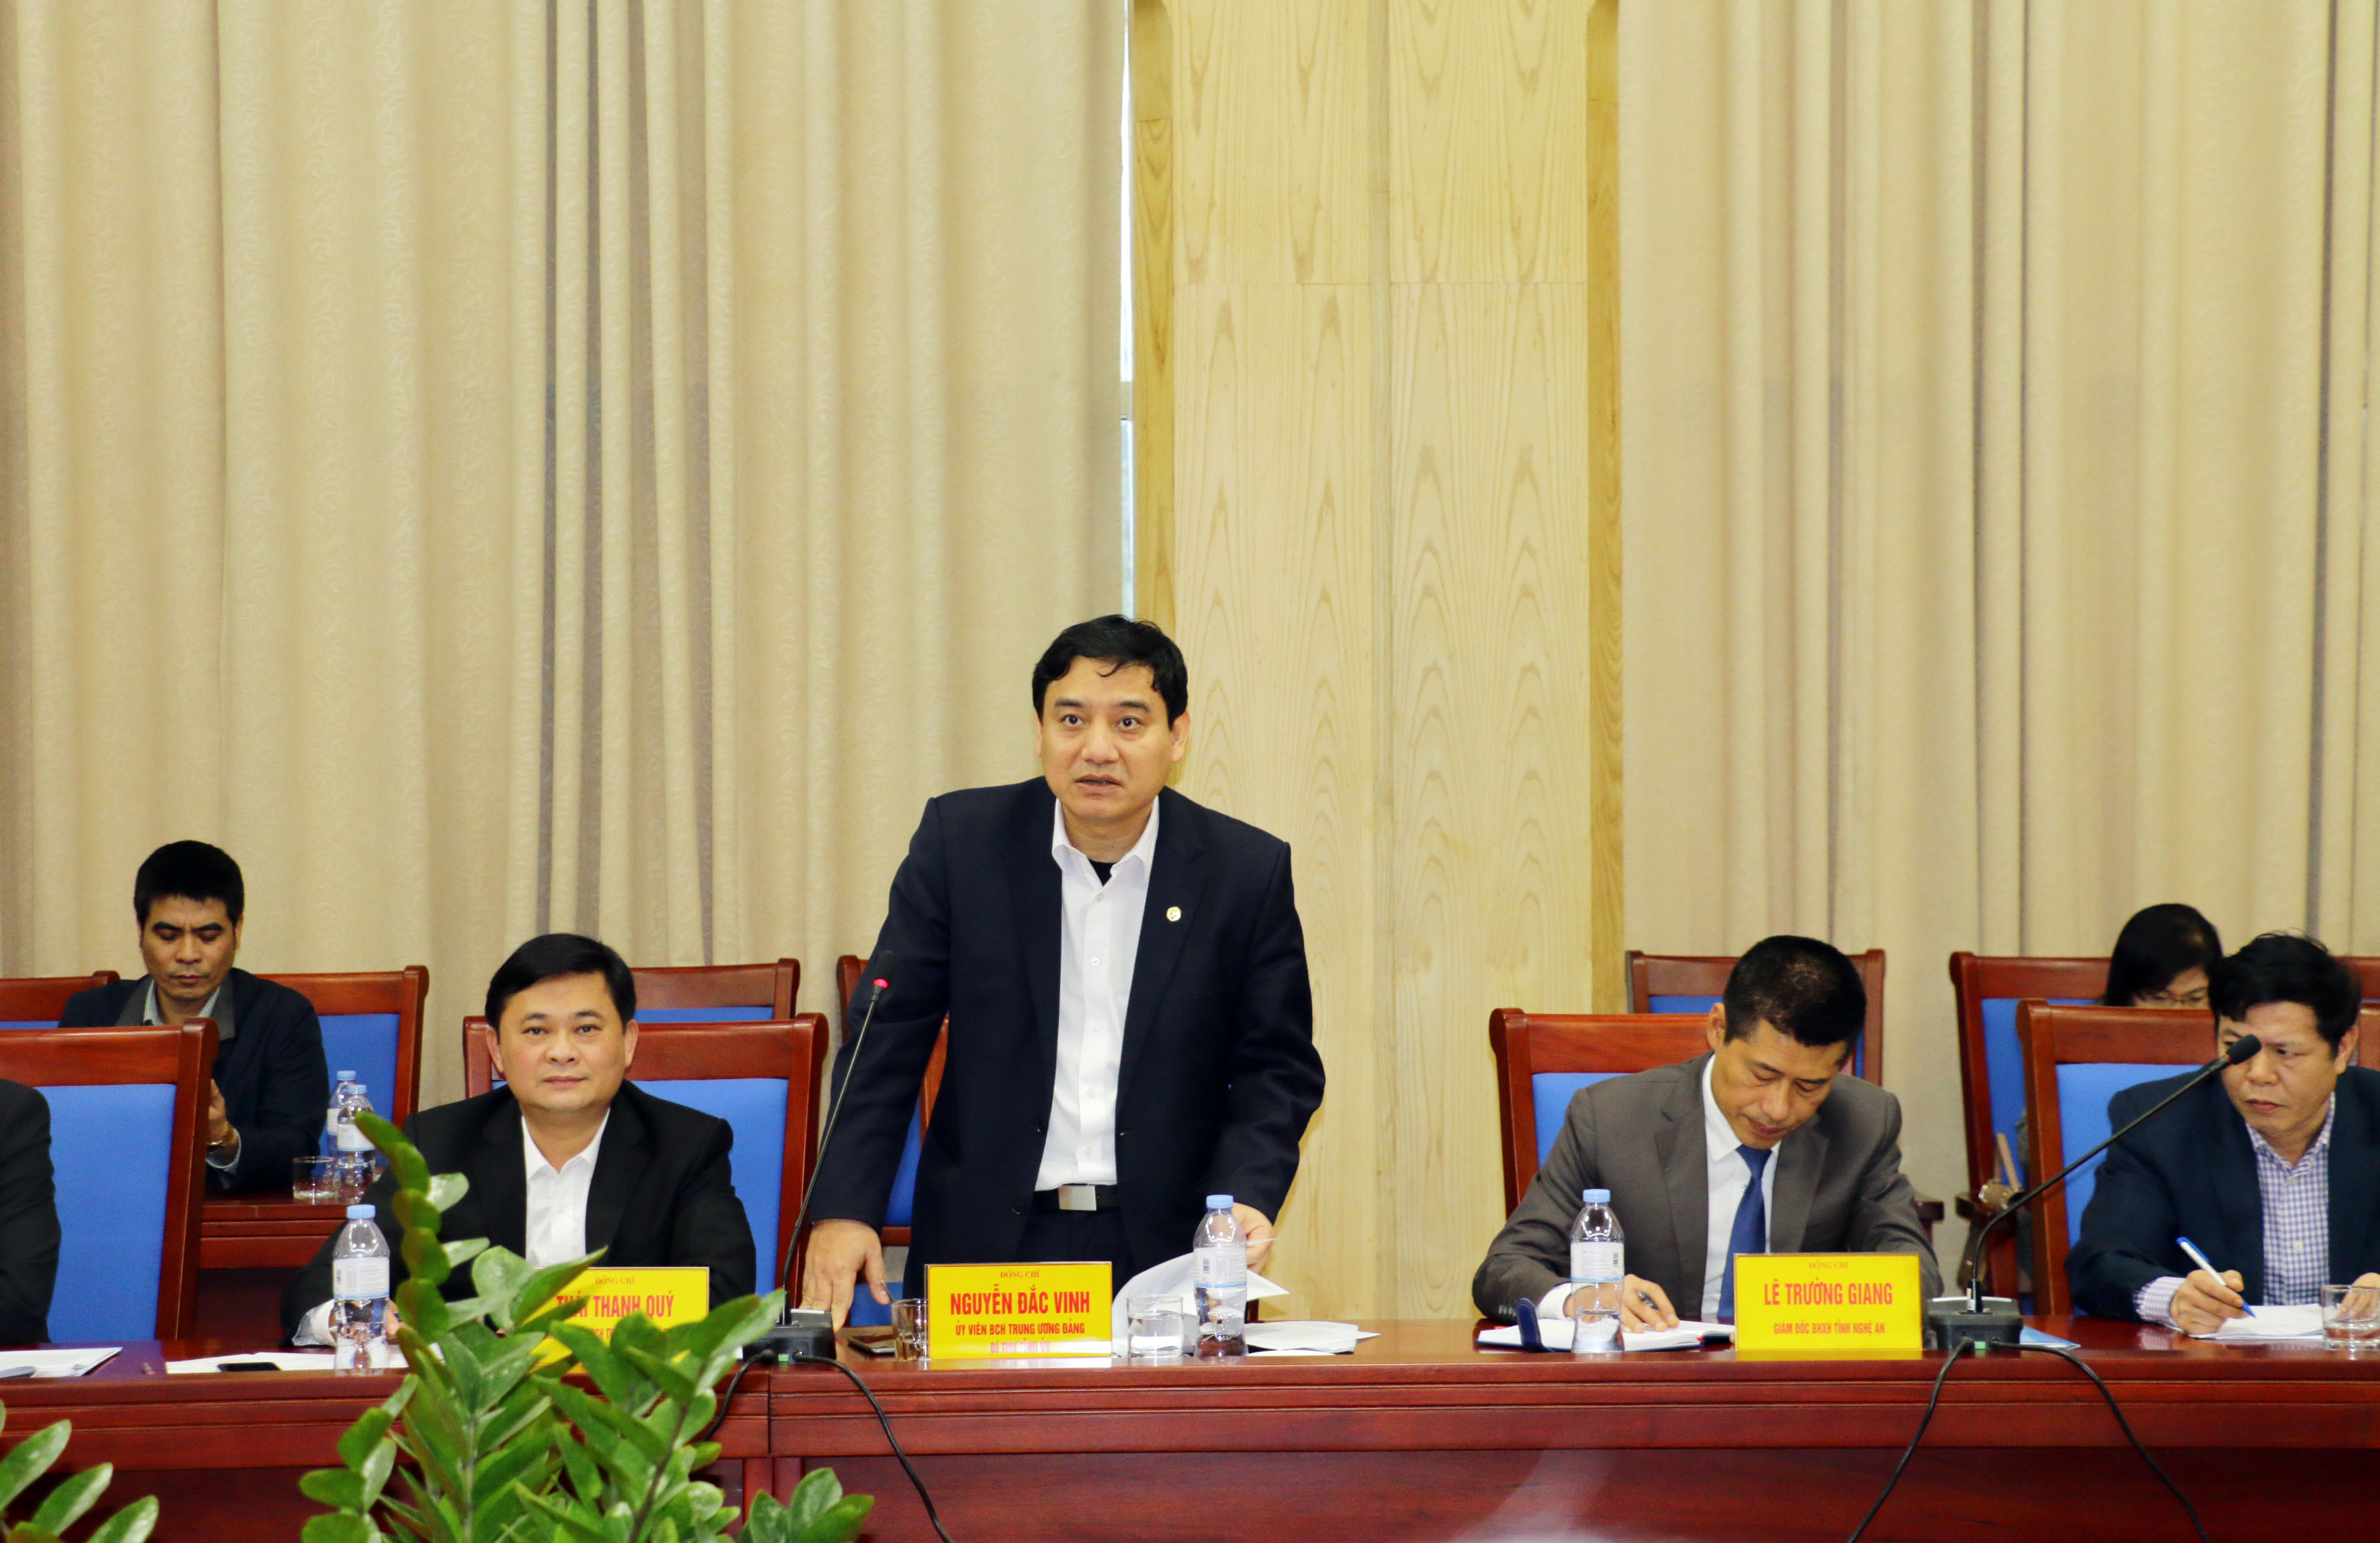 Đồng chí Bí thư Tỉnh ủy Nguyễn Đắc Vinh phát biểu tại buổi làm việc. Ảnh: Mỹ Hà